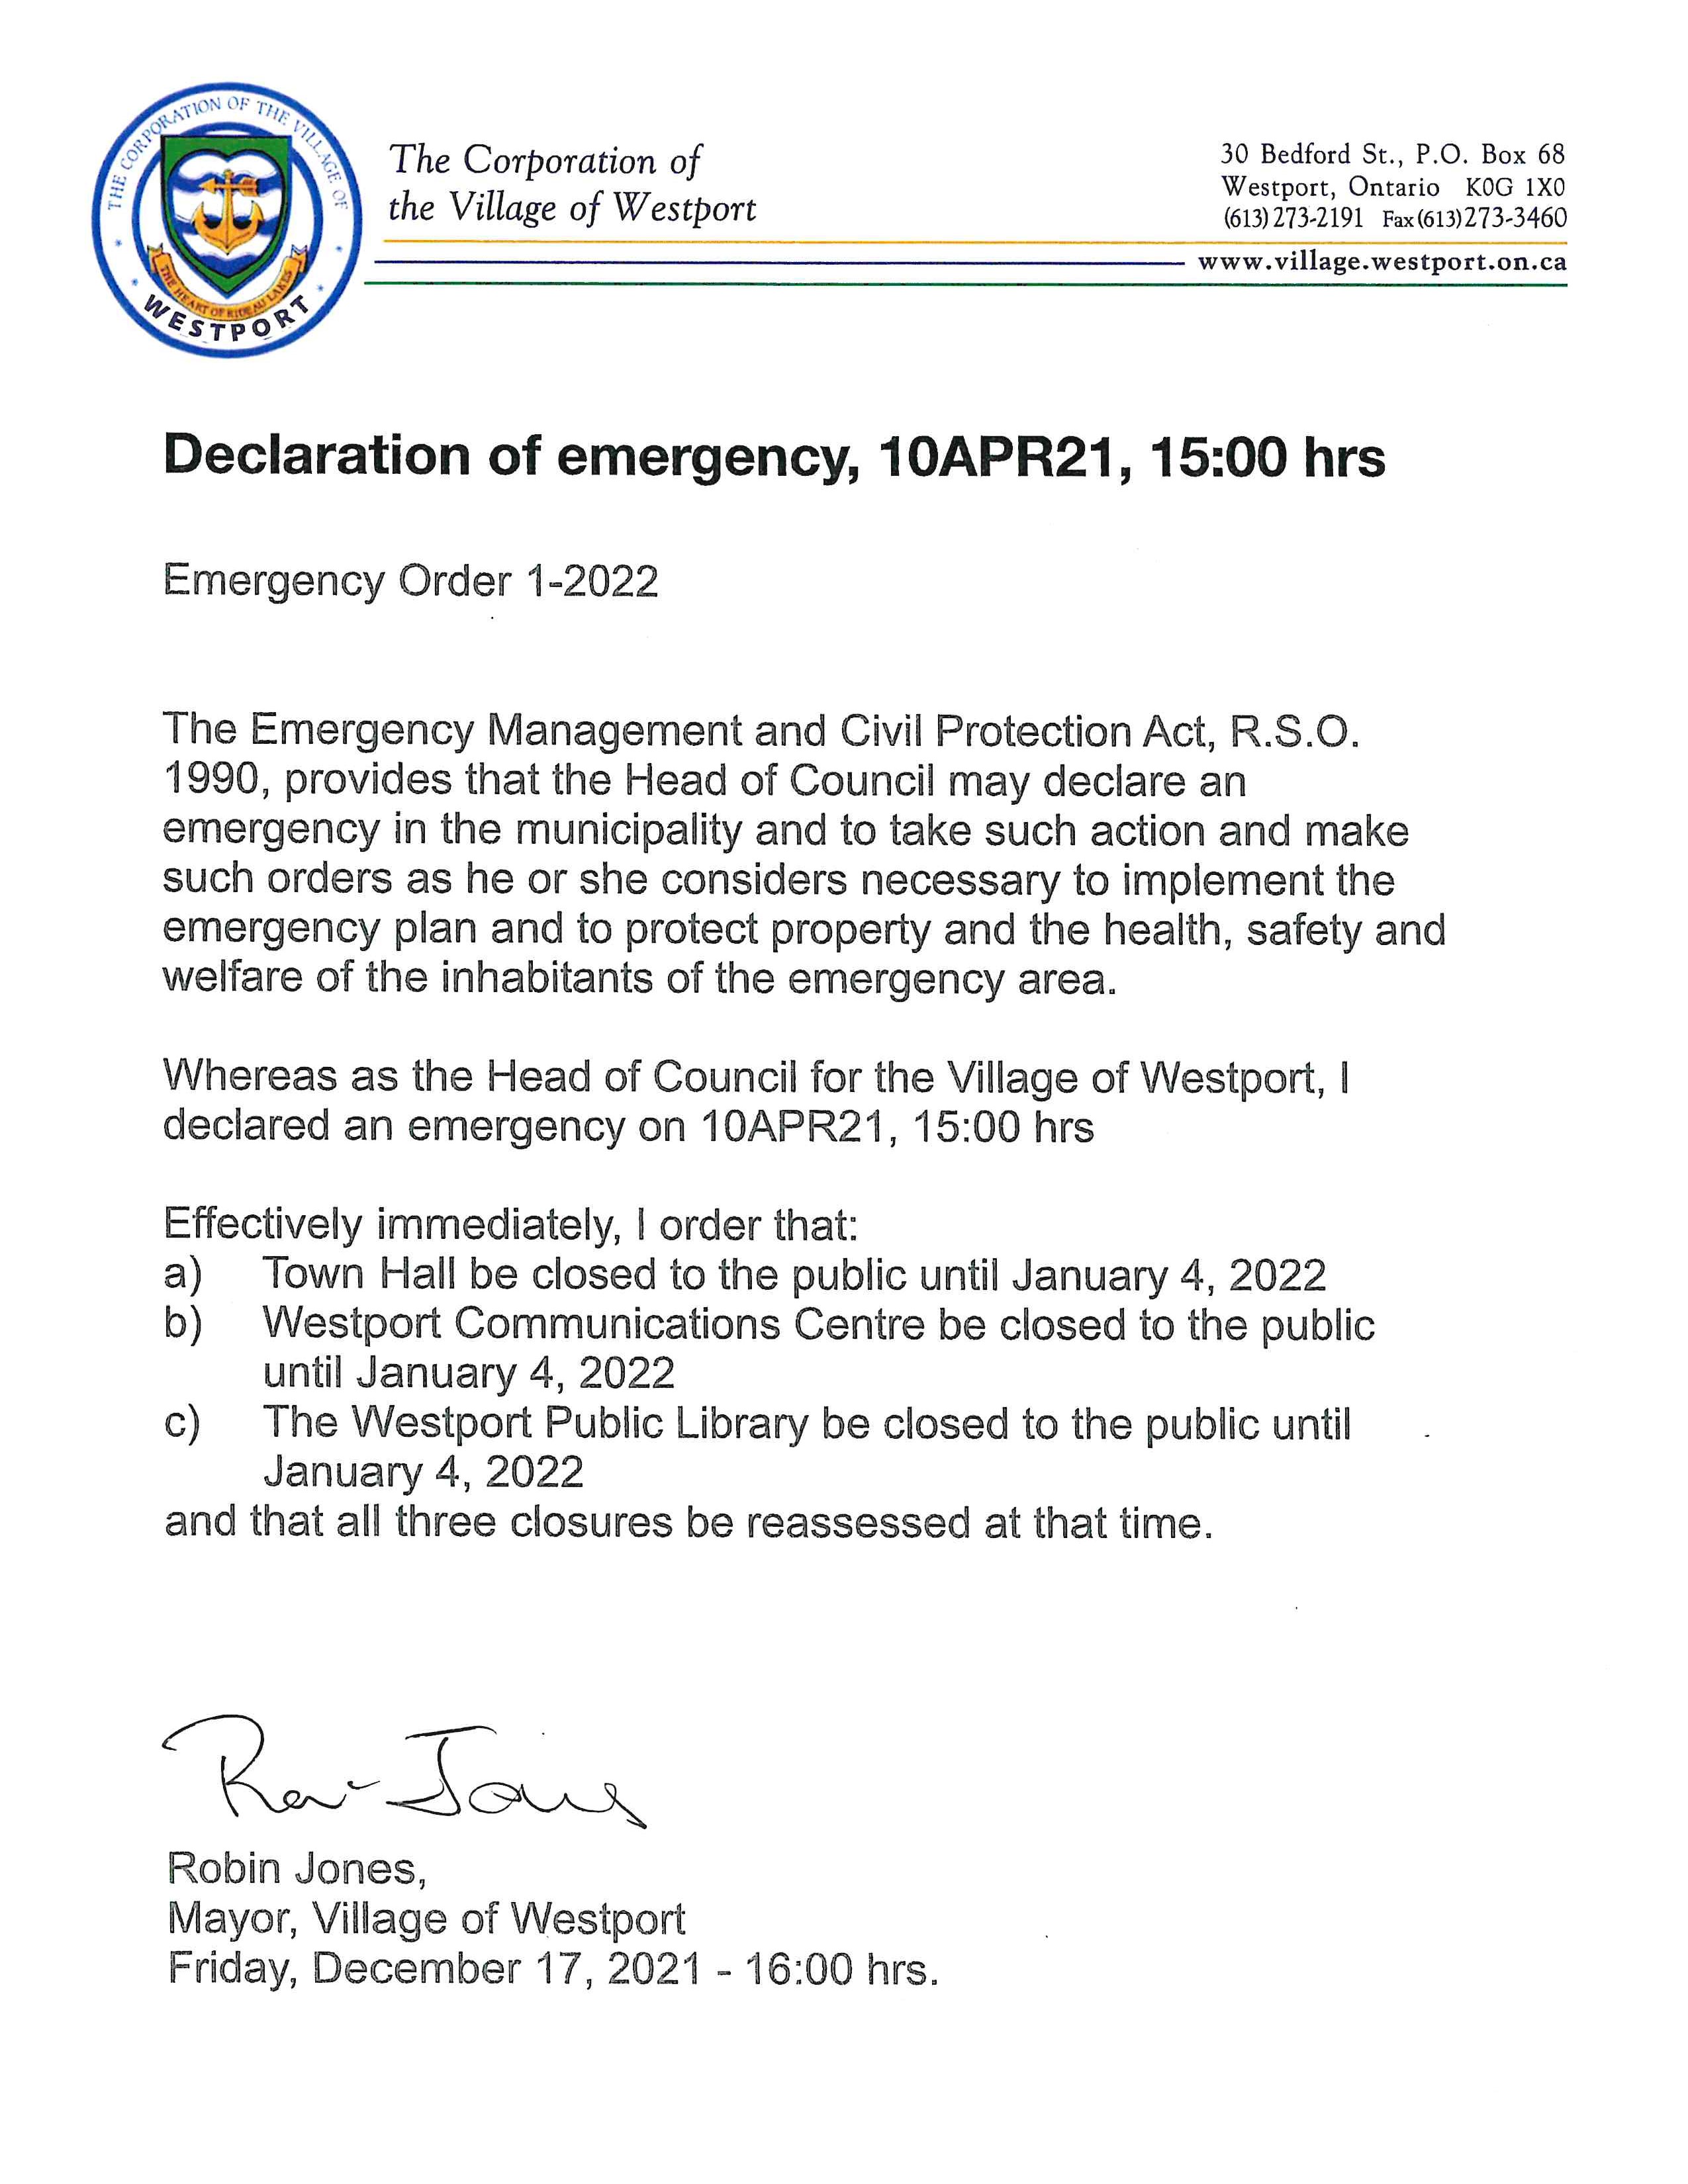 Emergency Order issued in Westport